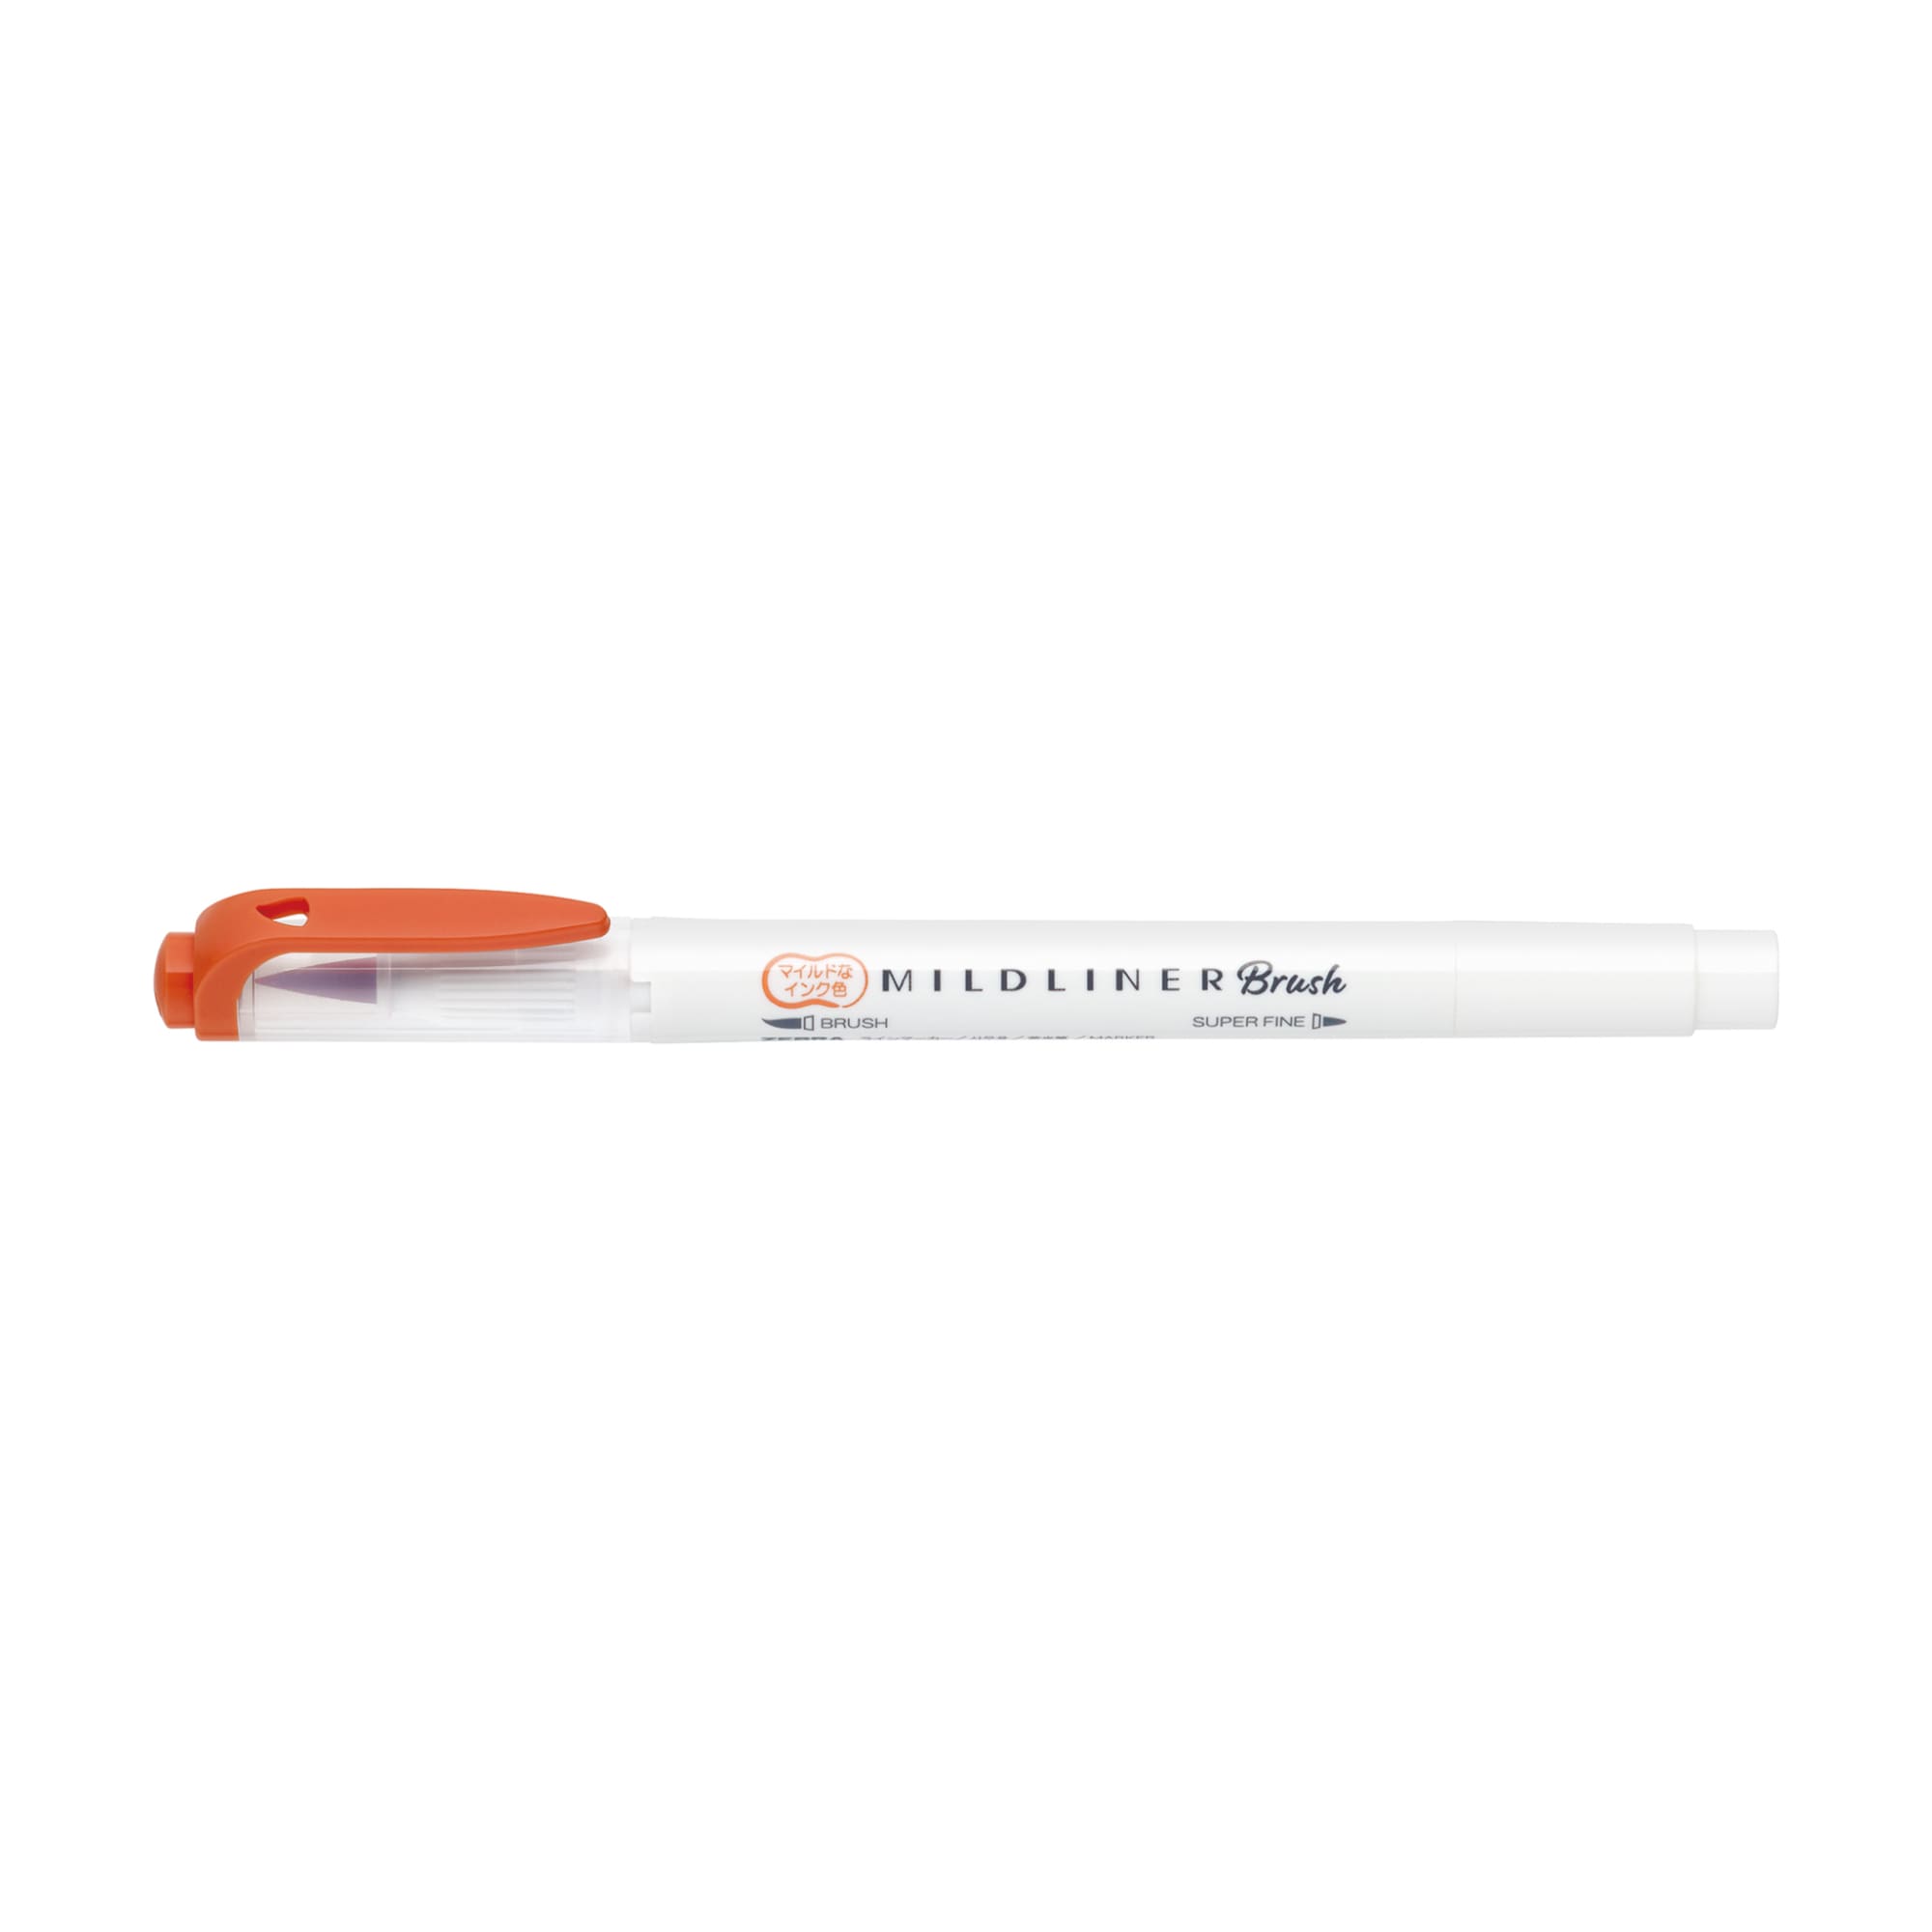 Review & Swatch Zebra Mildliner Brush Pen 🖊 Brush pen for